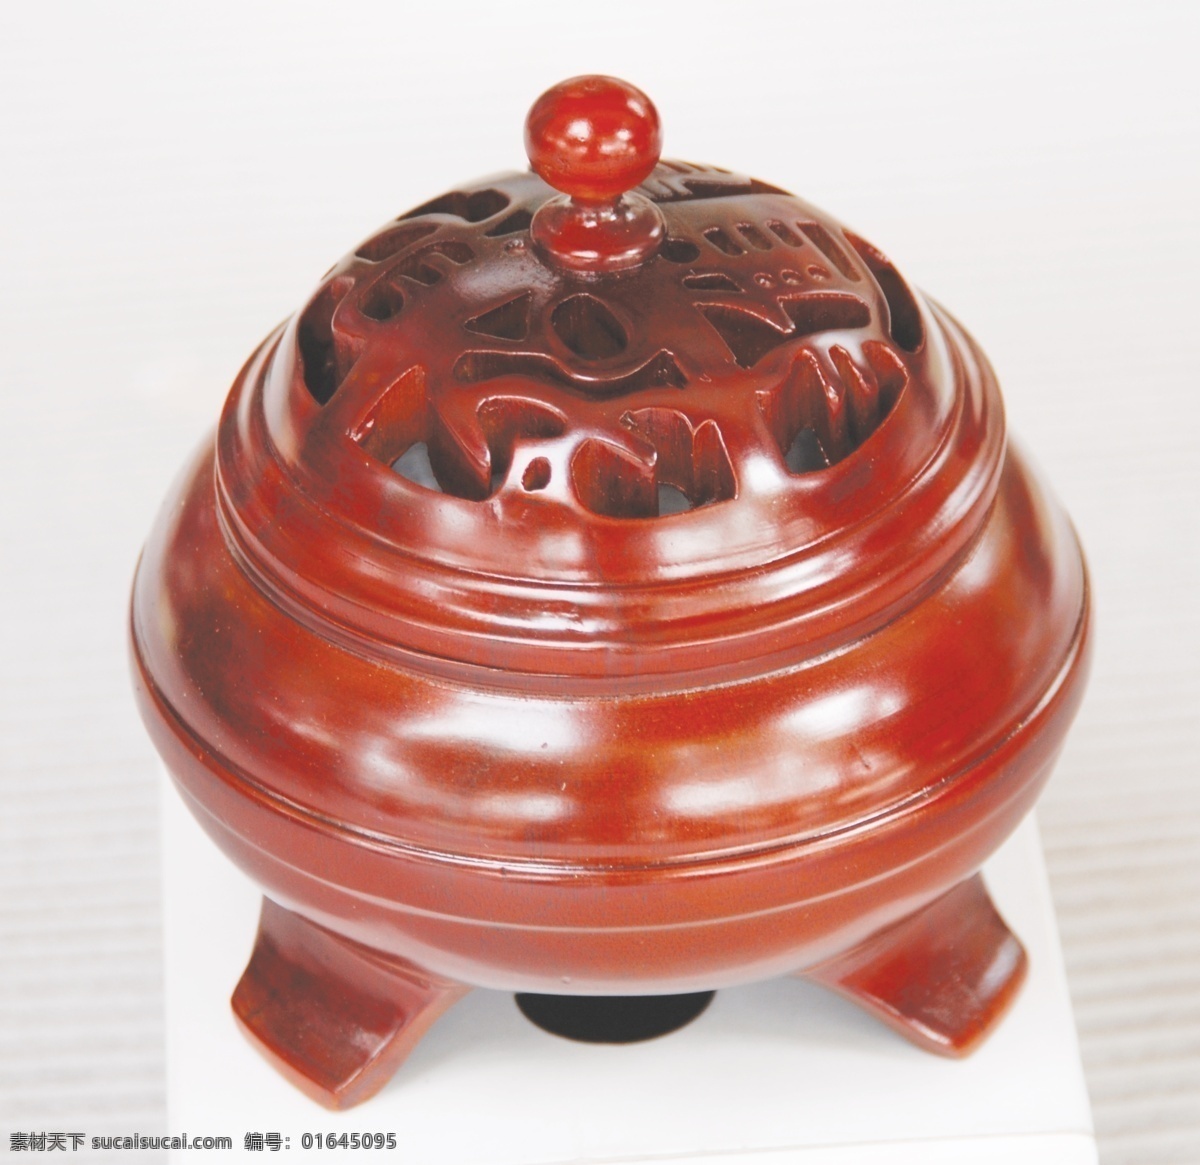 檀香炉 红木 古典 炉 红木工艺品 装饰品 传统文化 文化艺术